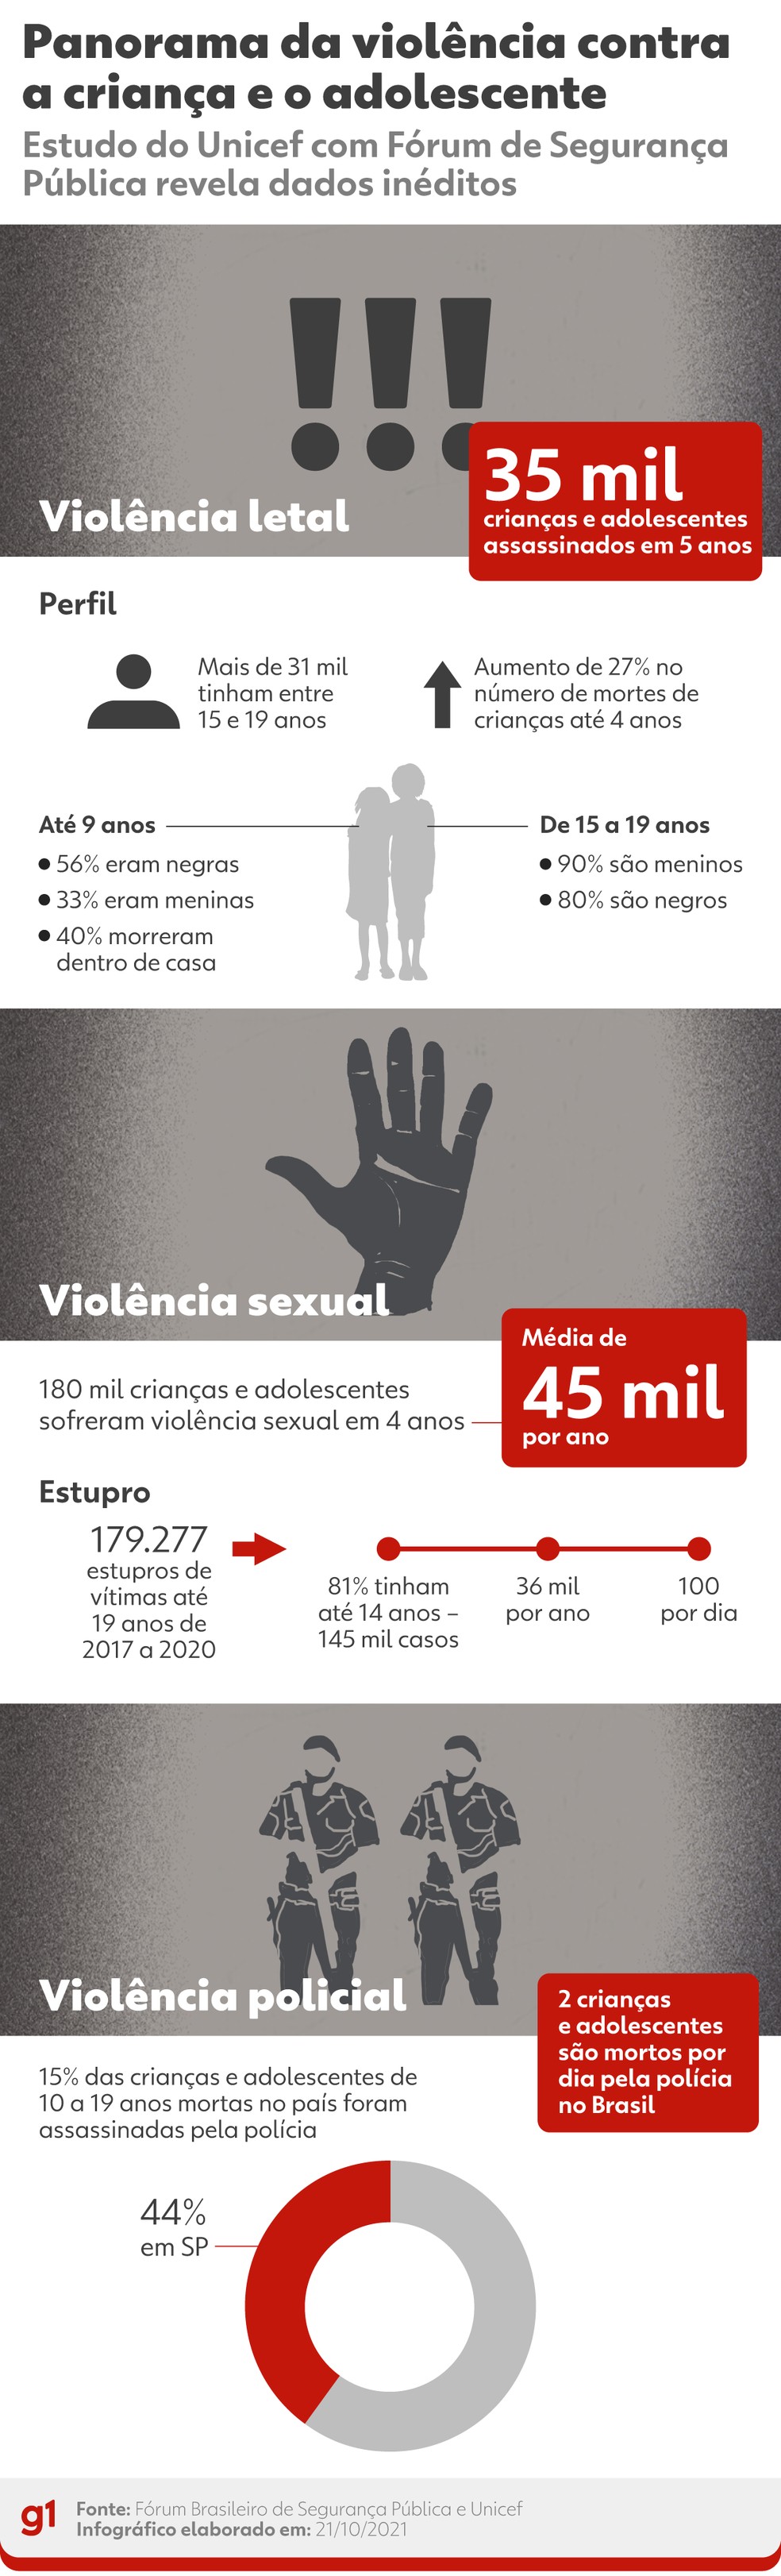 Principais pontos do Panorama da violncia letal e sexual contra crianas e adolescentes no Brasil  Foto: Arte/g1